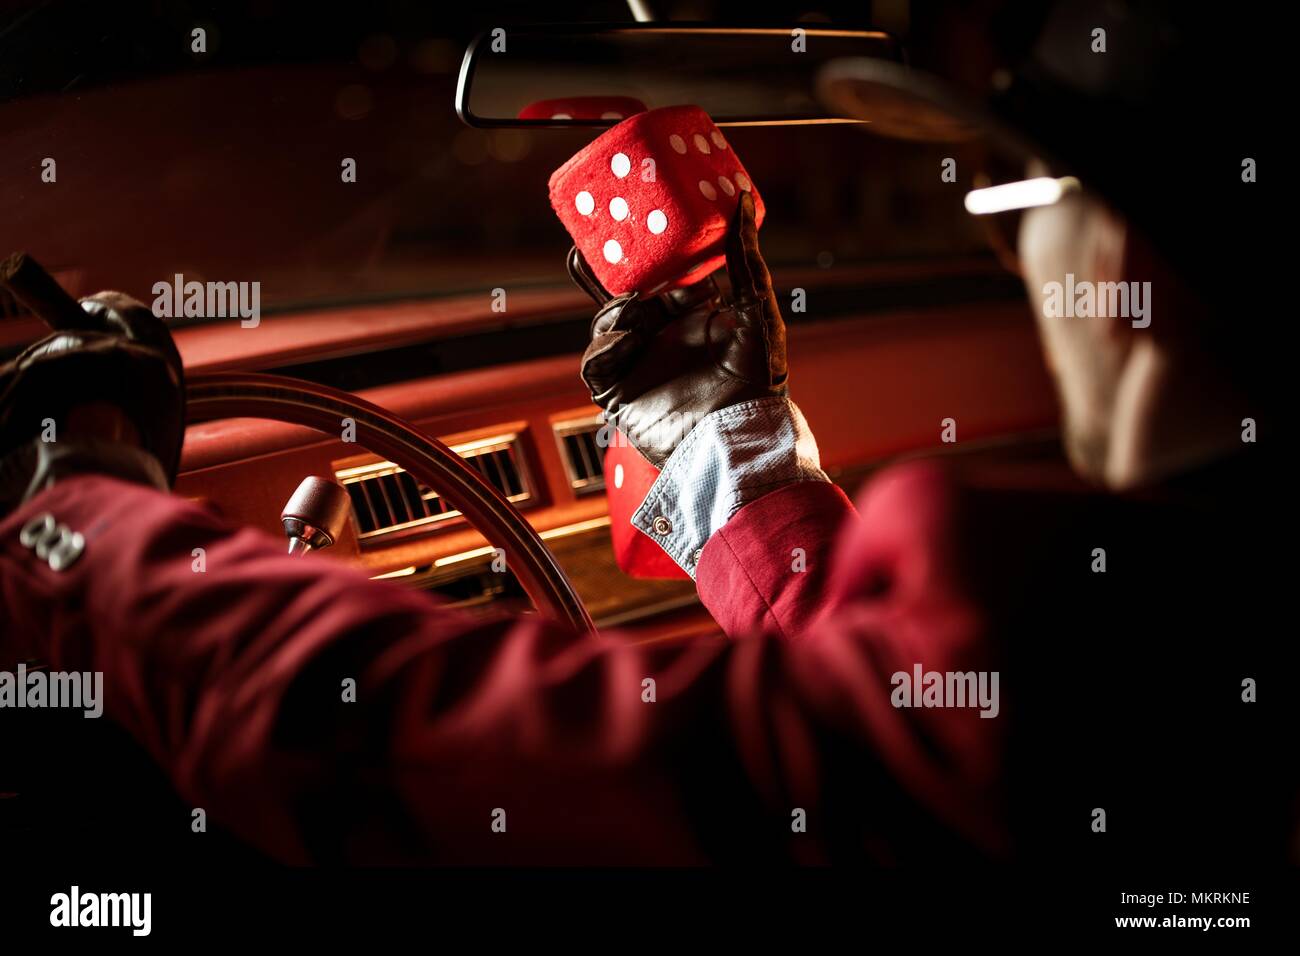 Casino Lucky desiderio concetto. Casinò Poker Player parlando a suo fortunato dadi rossi all'interno dell'auto classica. Foto Stock